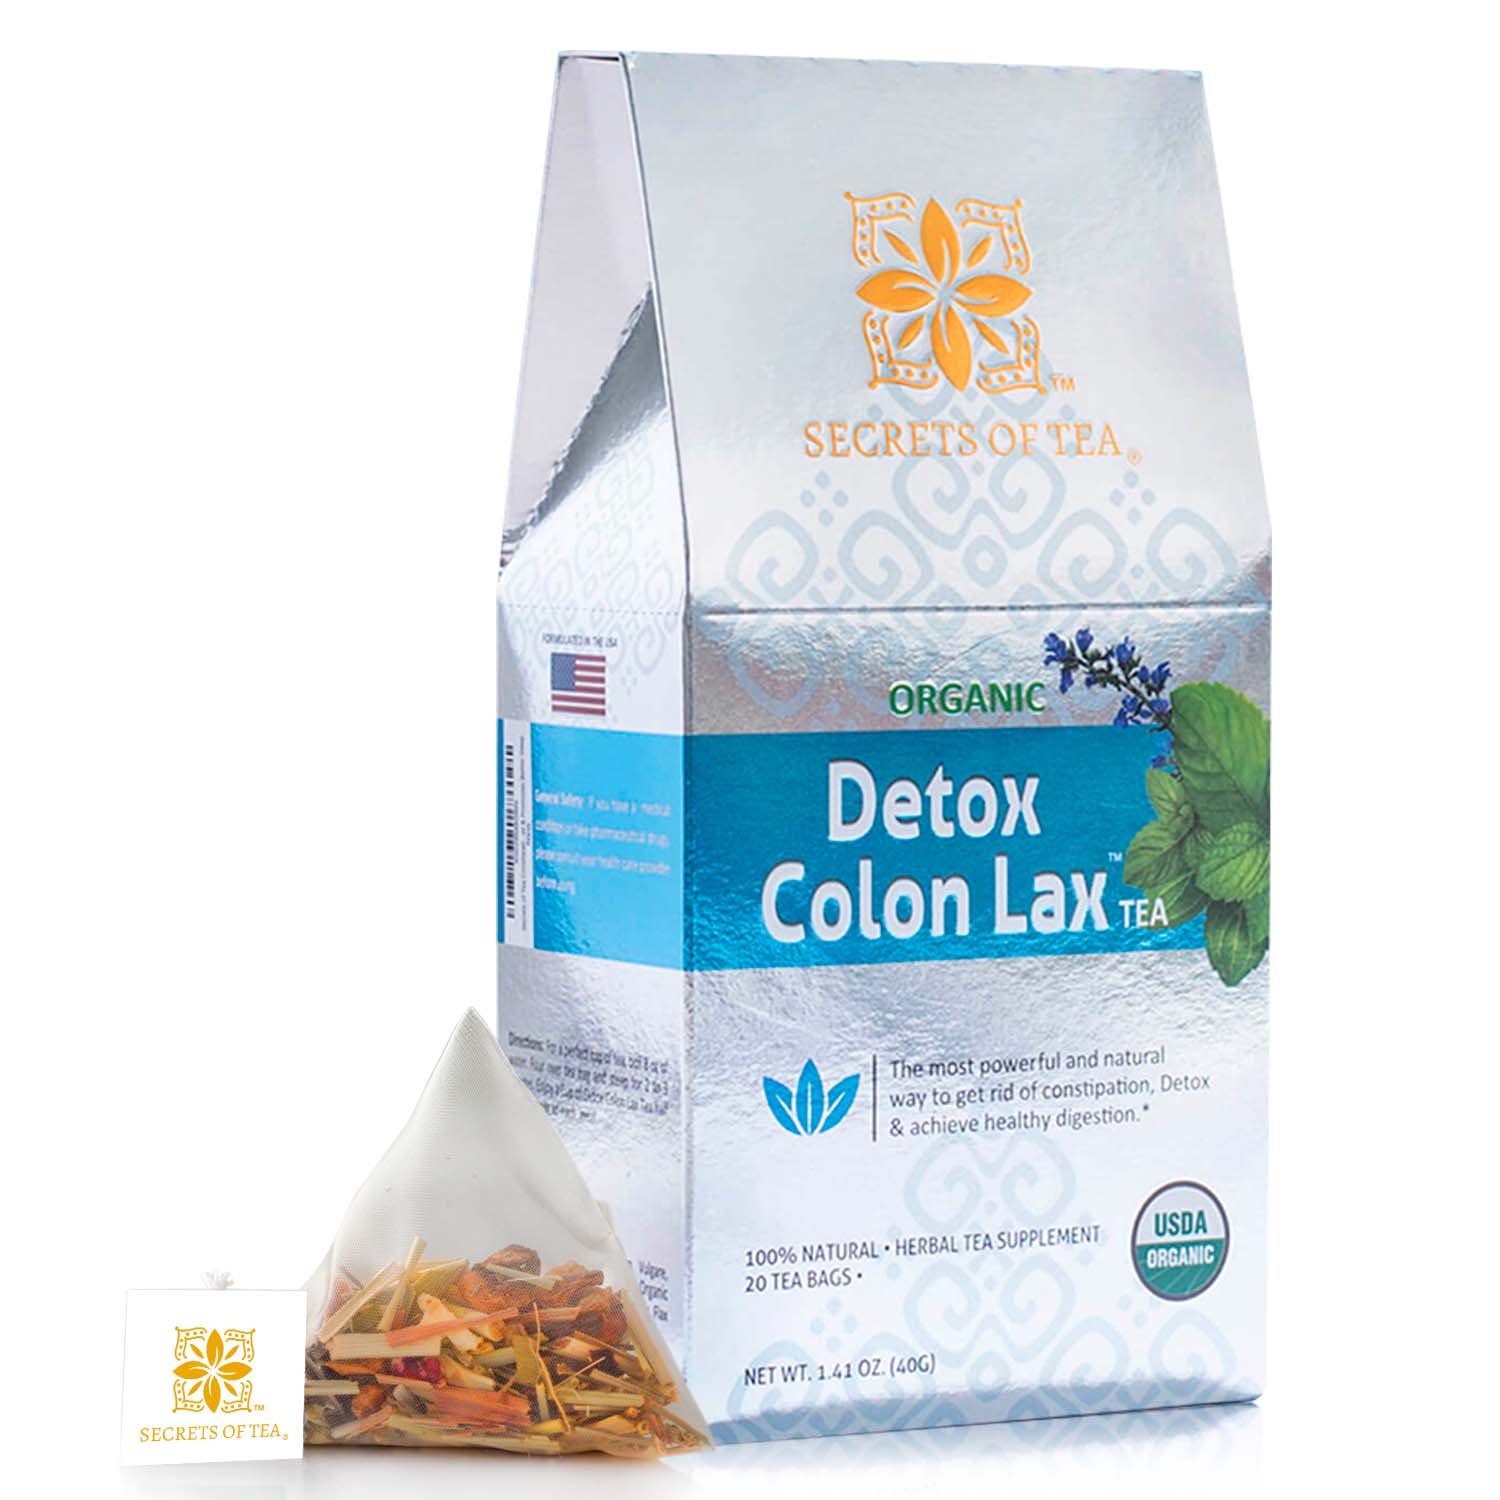 Secrets of Tea Organic Detox Colon Lax Tea 2 innerpacks per case 2.0 oz